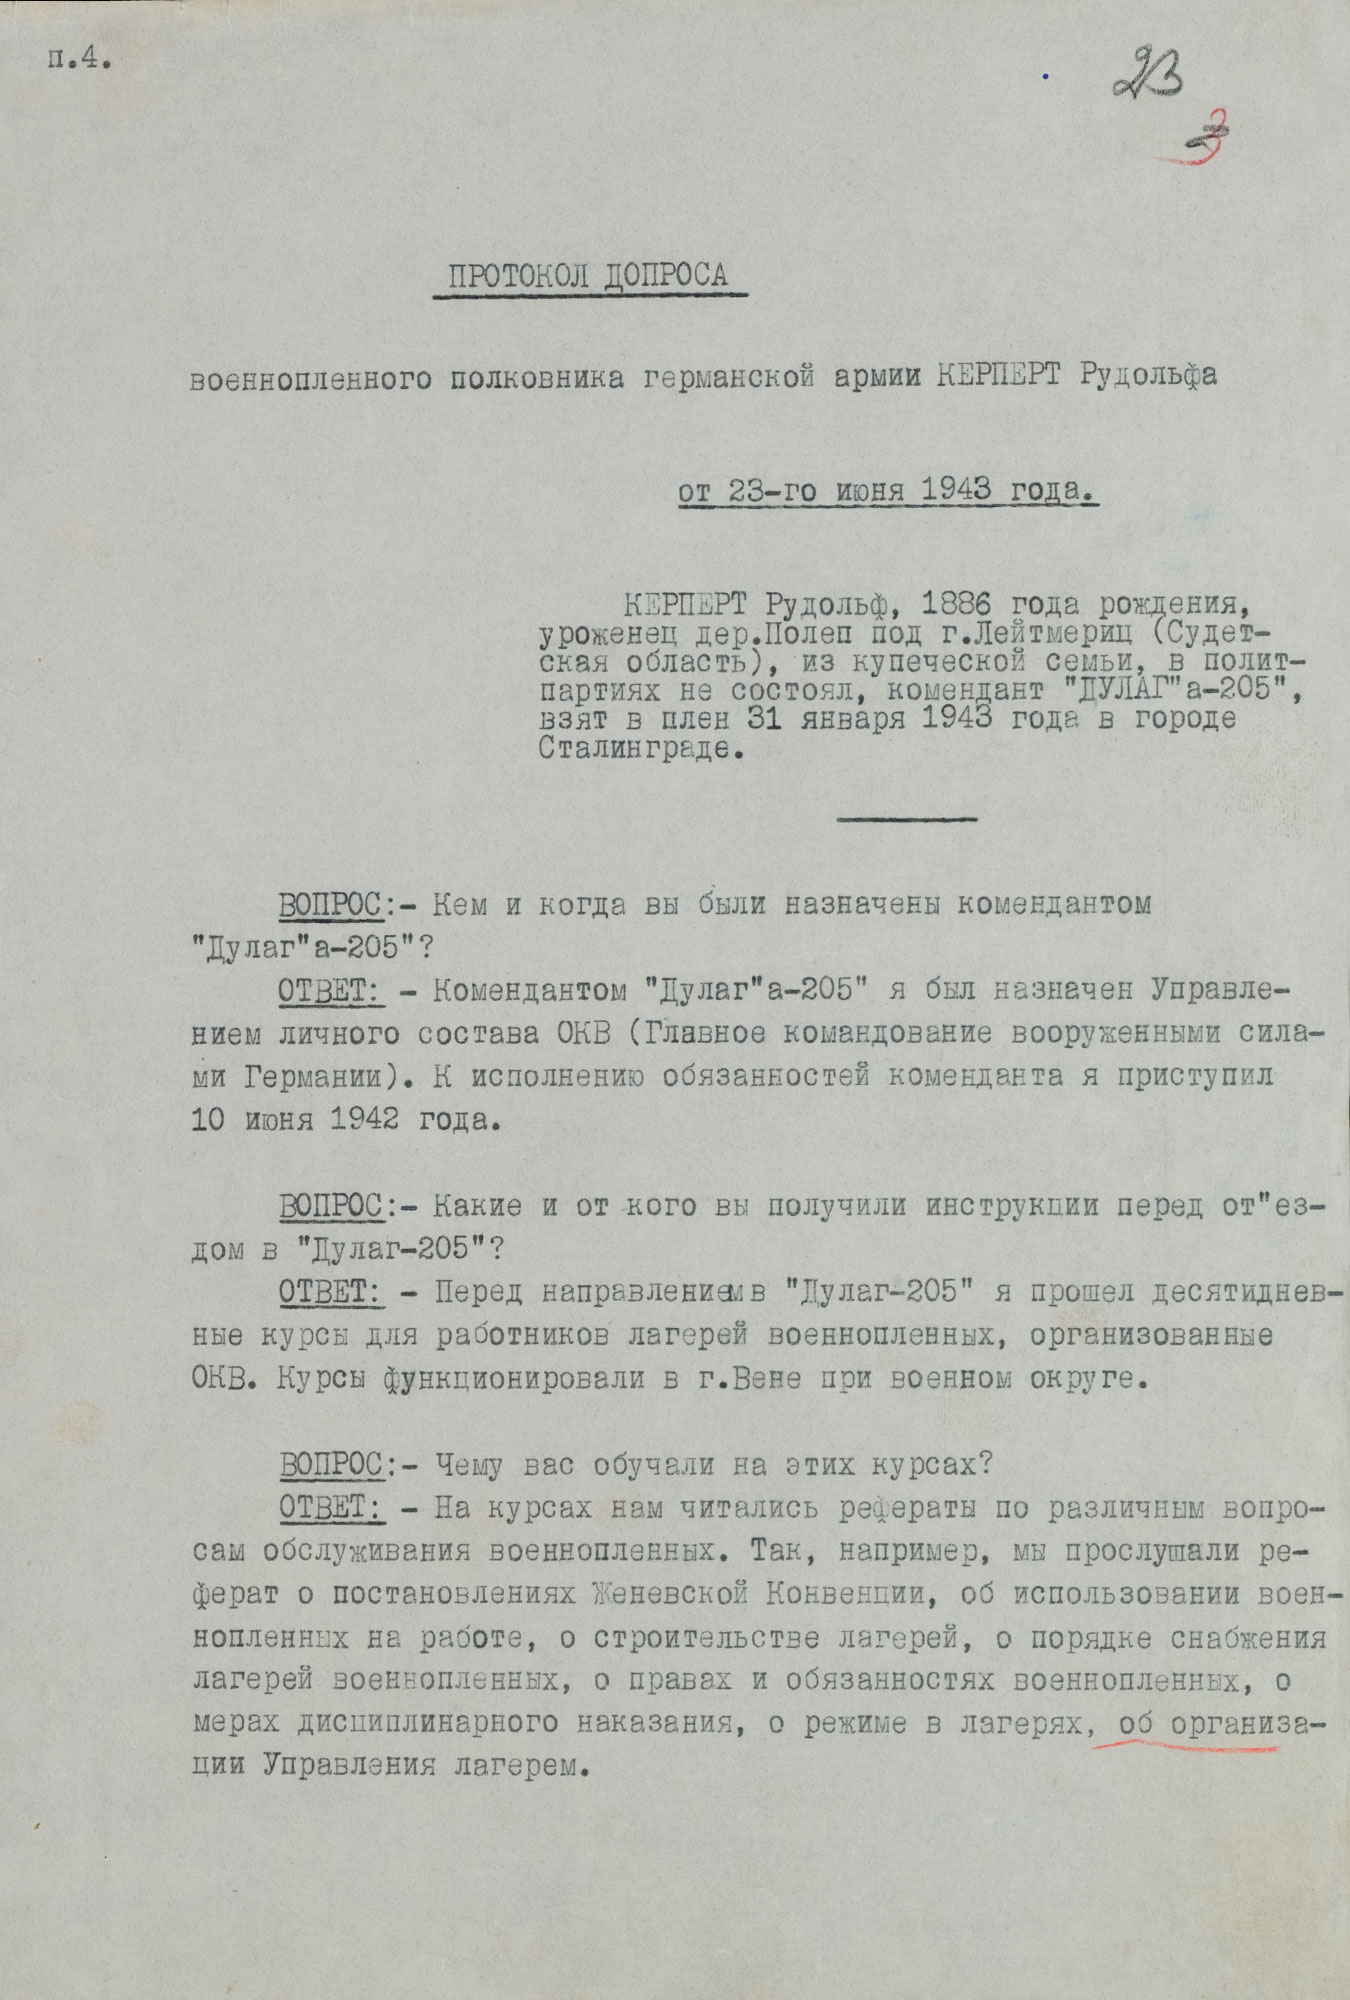 Протокол допроса военнопленного полковника германской армии КЕРПЕРТА Рудольфа, коменданта «Дулаг-205». 23 июня 1943 г. Страница 1